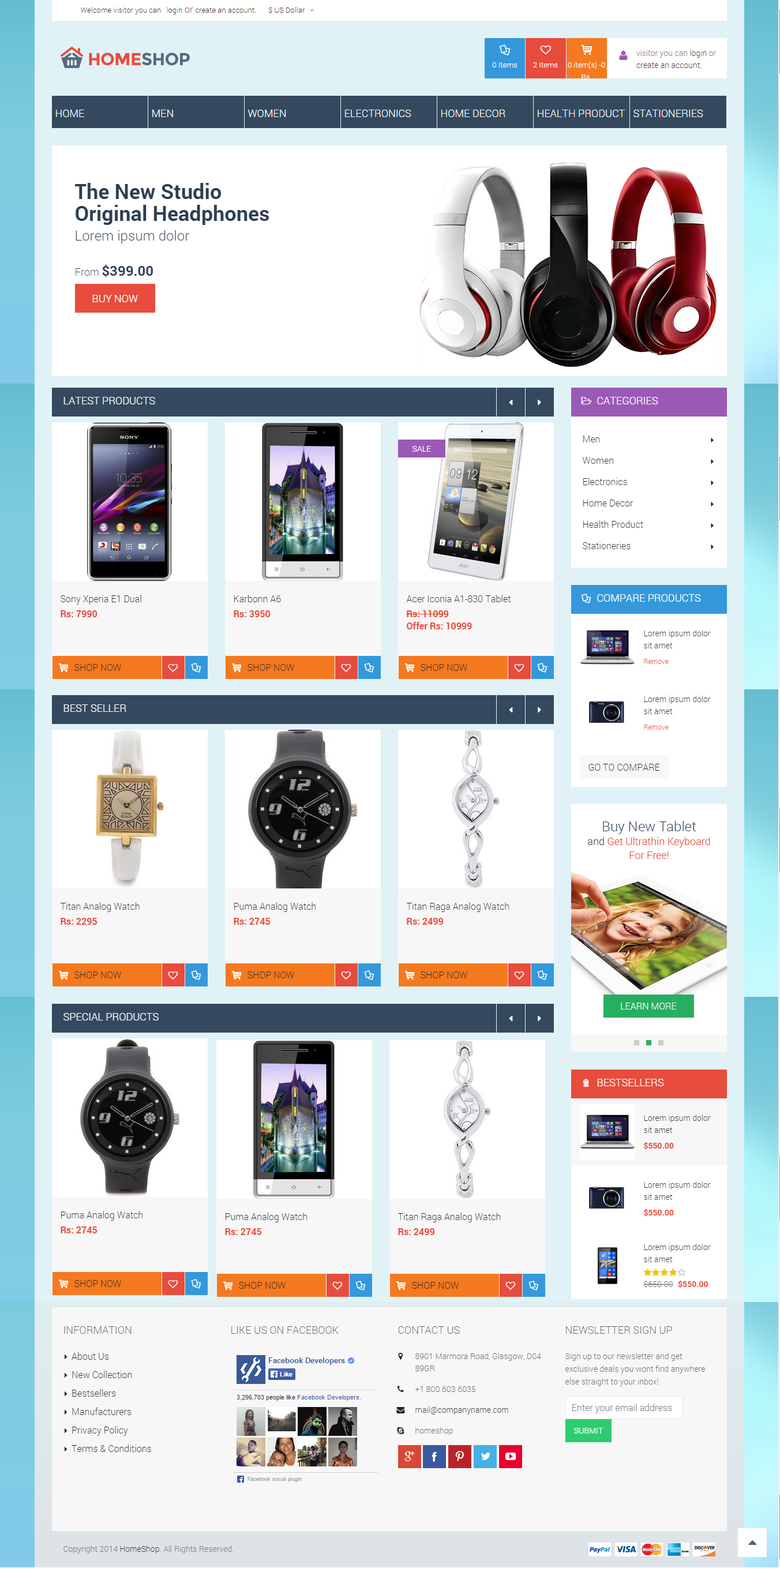 E-commerce Site